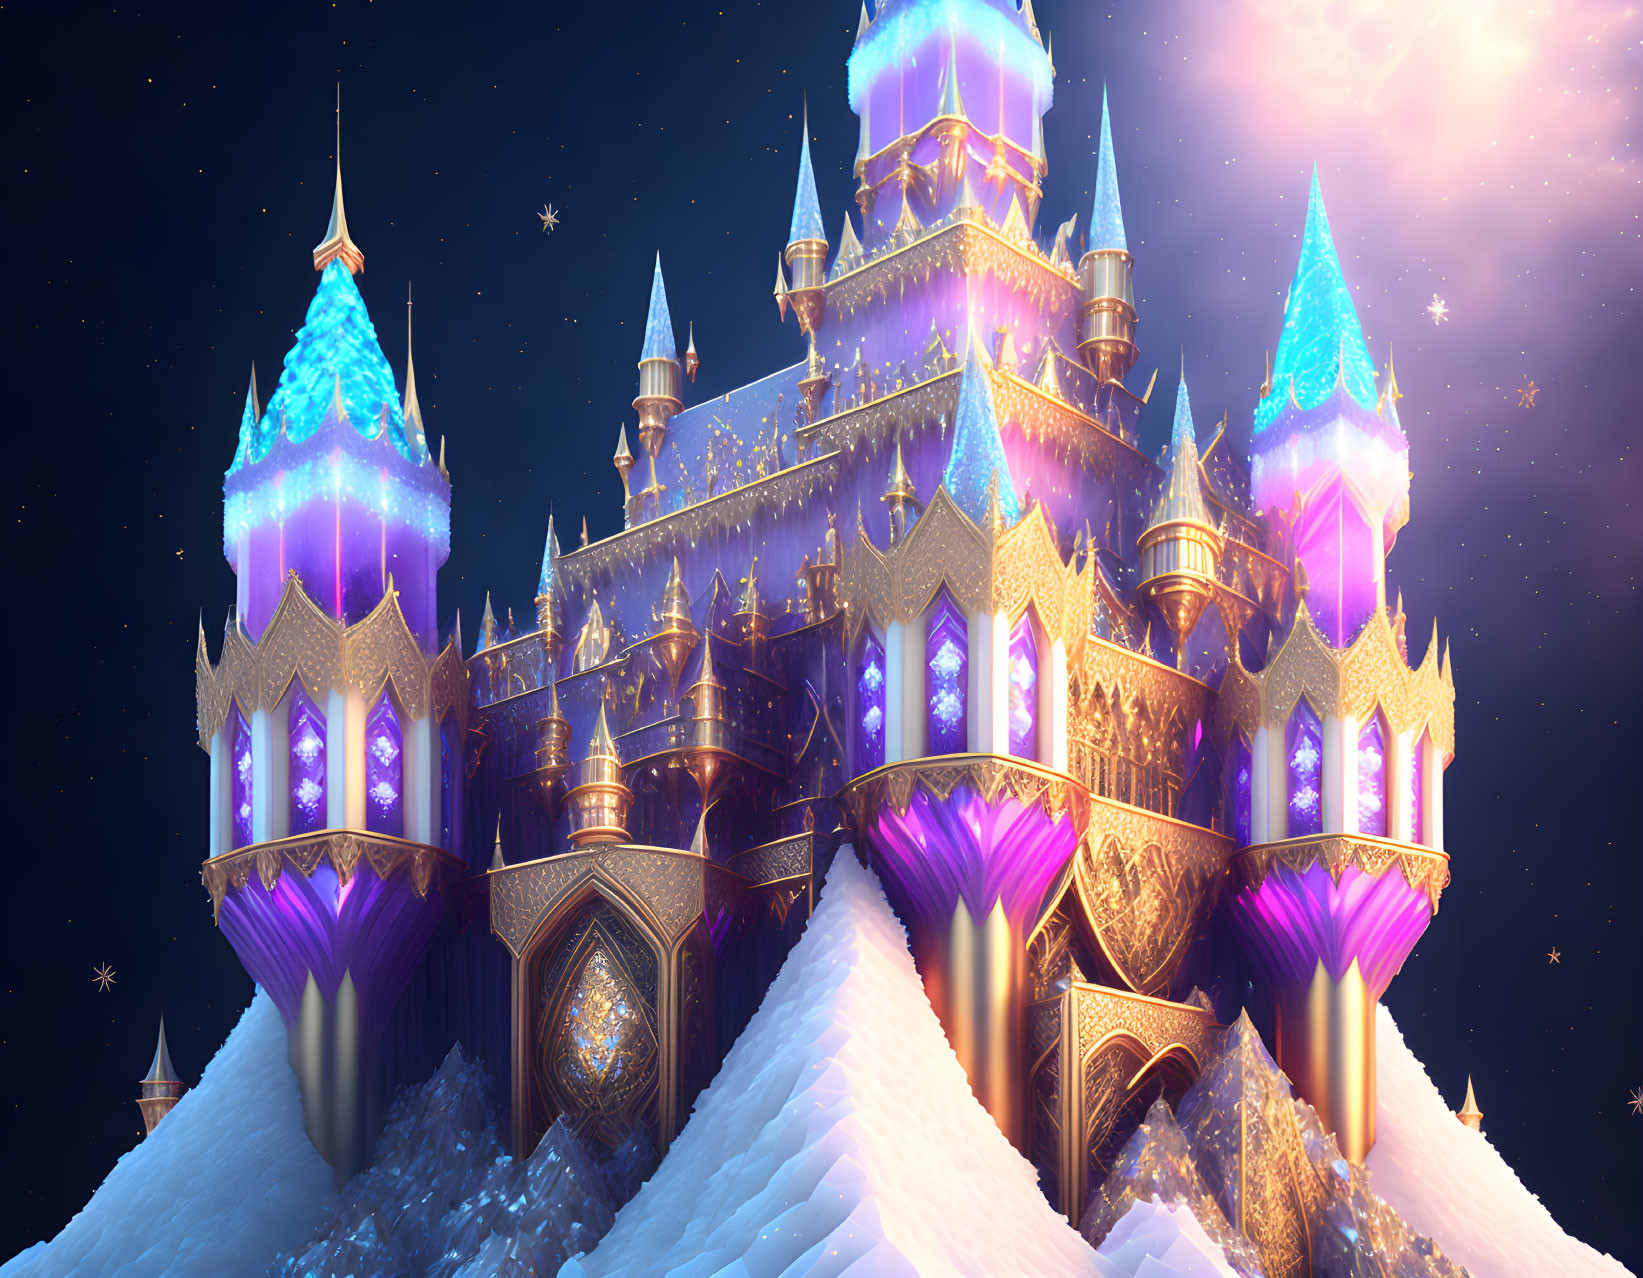 Illuminated castle on snowy hill under starry night sky